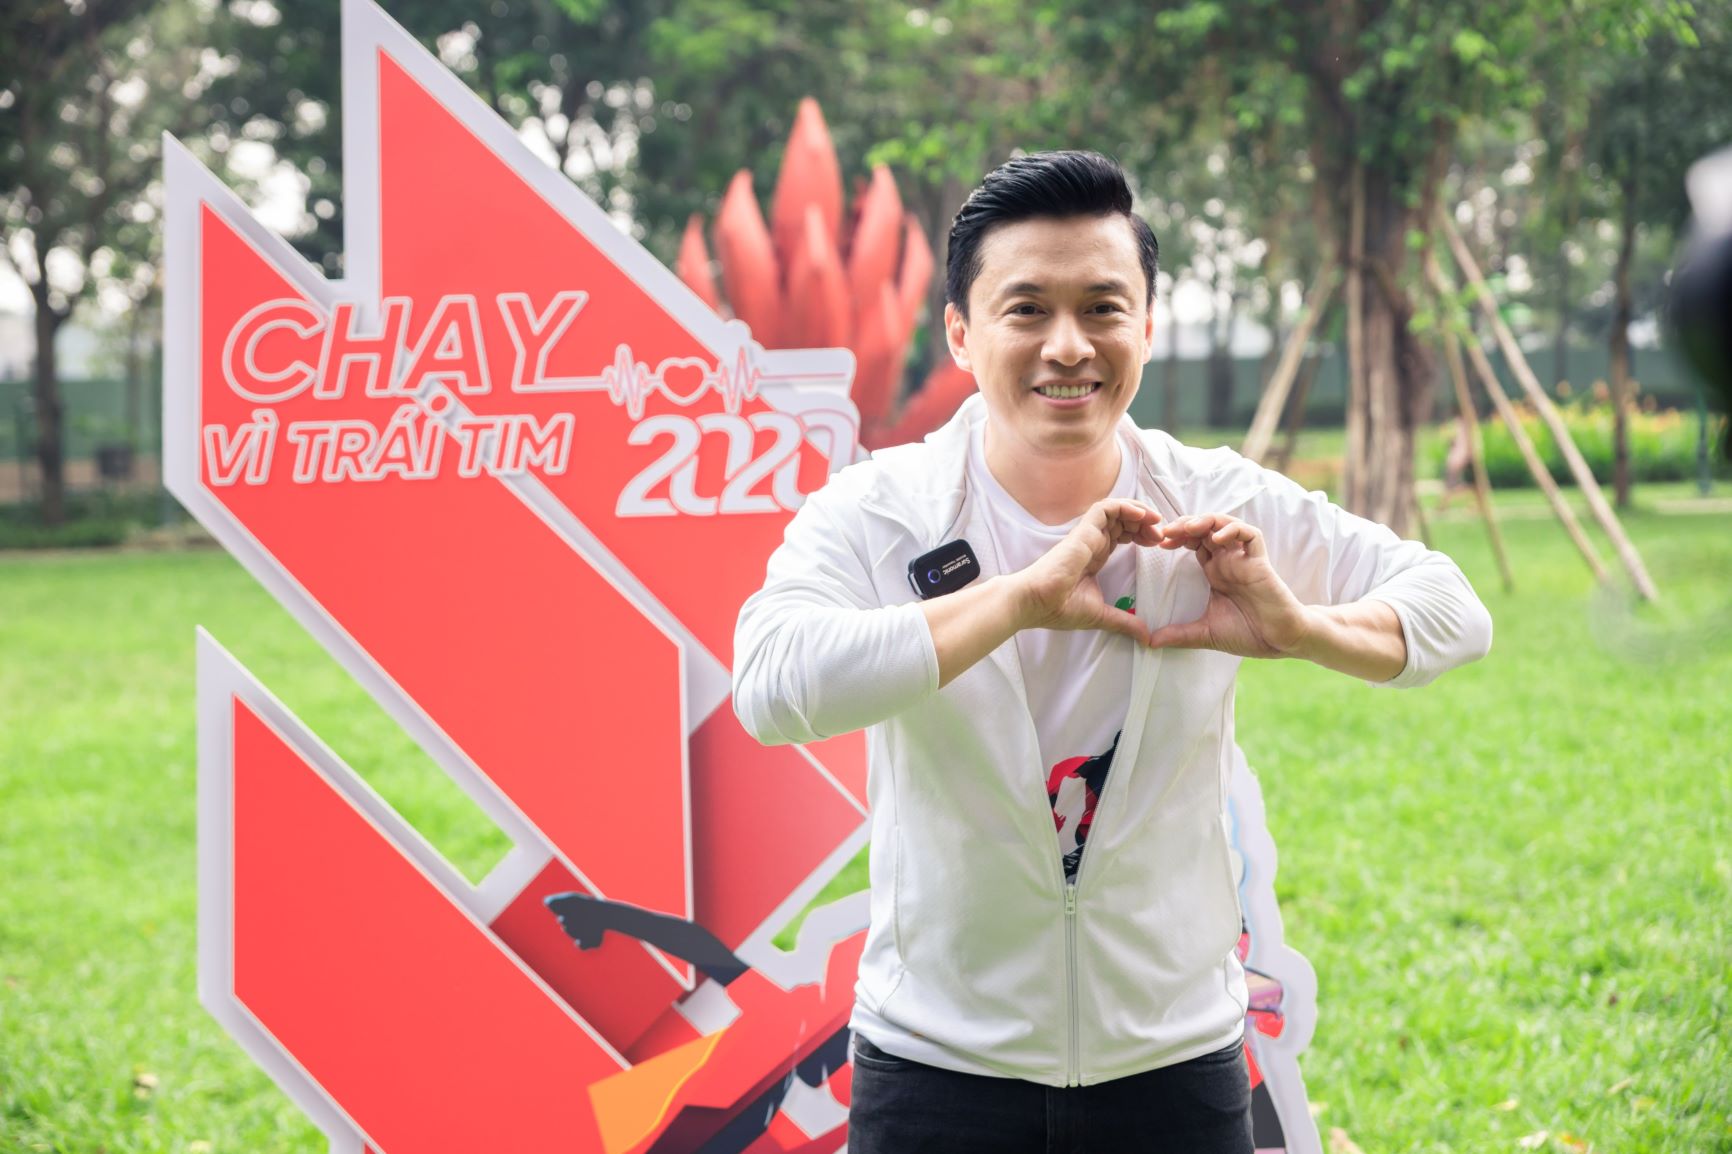 Ca sĩ Lam Trường hào hứng tham gia chương trình "Chạy vì trái tim" 2020